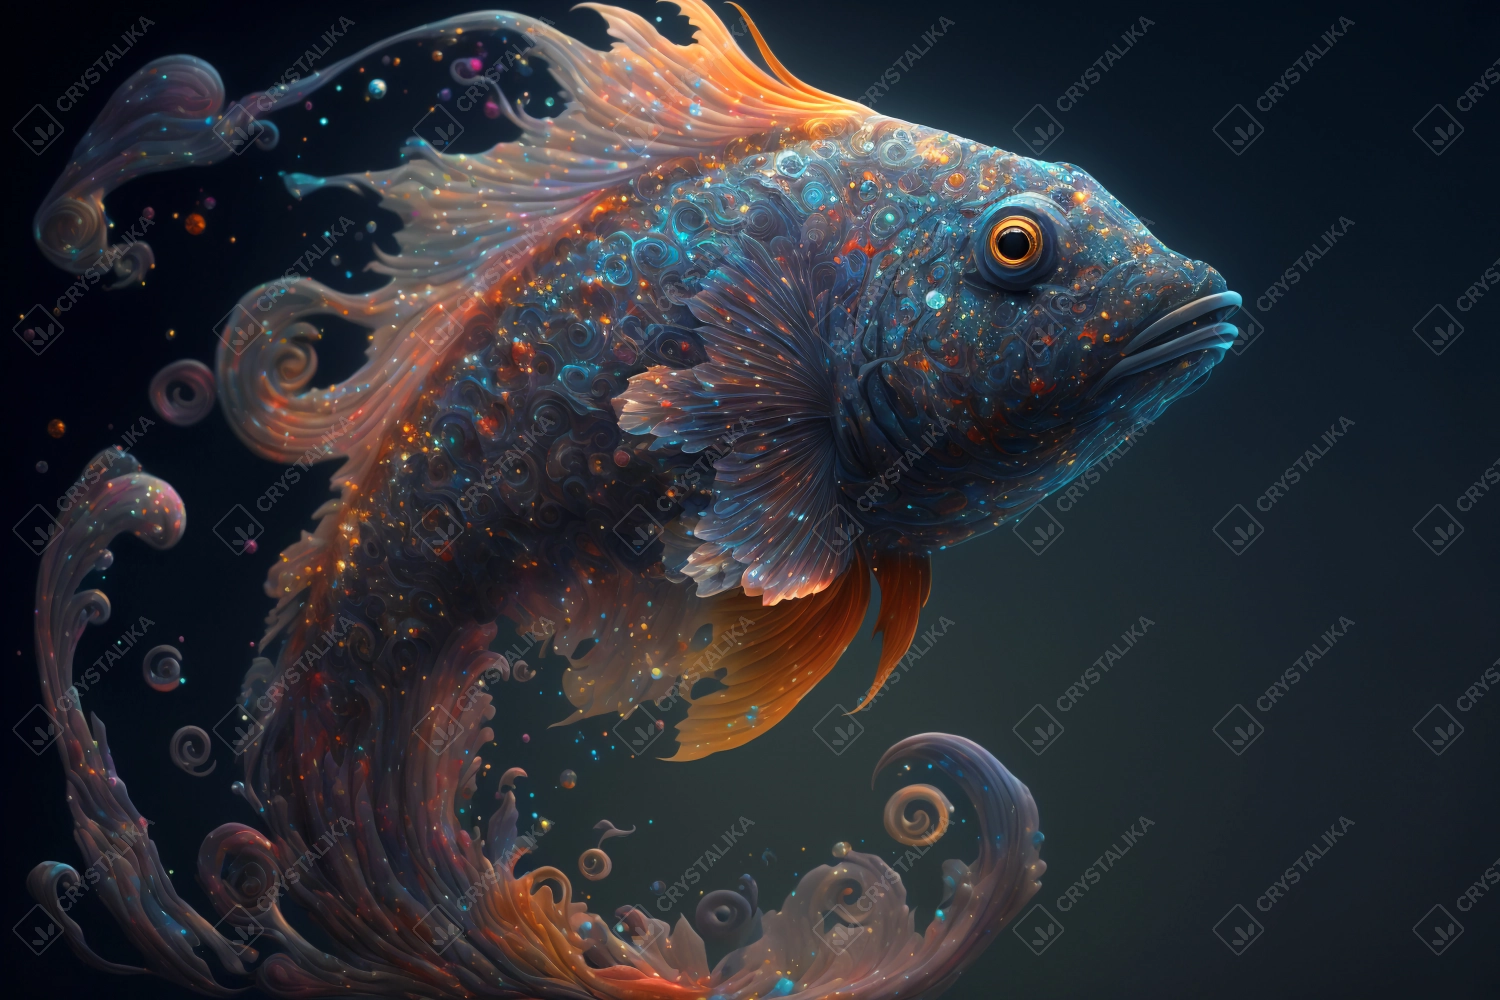 Spirit animal - Fish